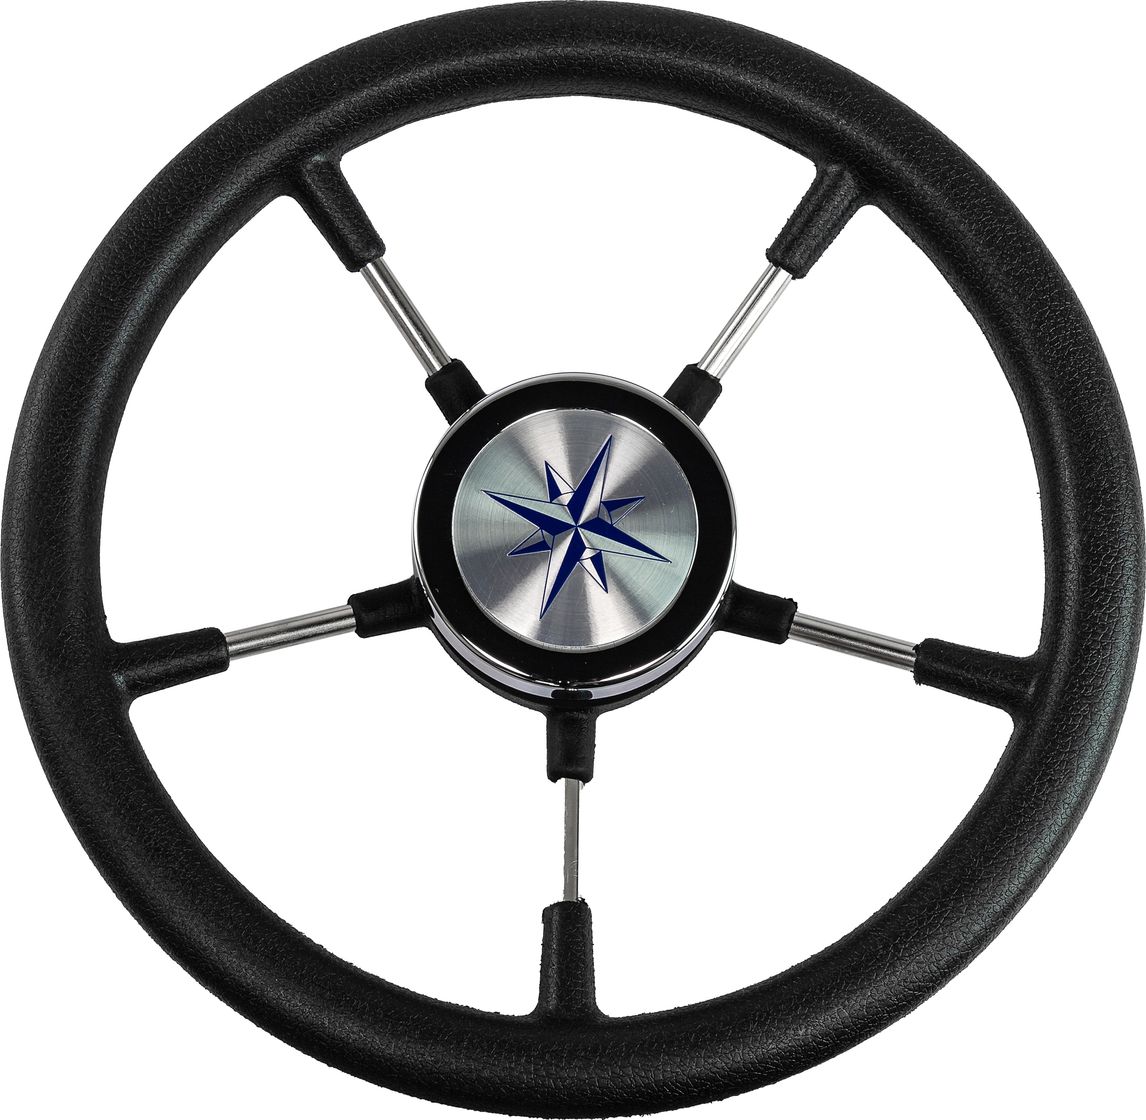 Рулевое колесо RIVA RSL обод черный, спицы серебряные д. 320 мм VN732022-01 рулевое колесо leader wood деревянный обод серебряные спицы д 360 мм vn7360 33